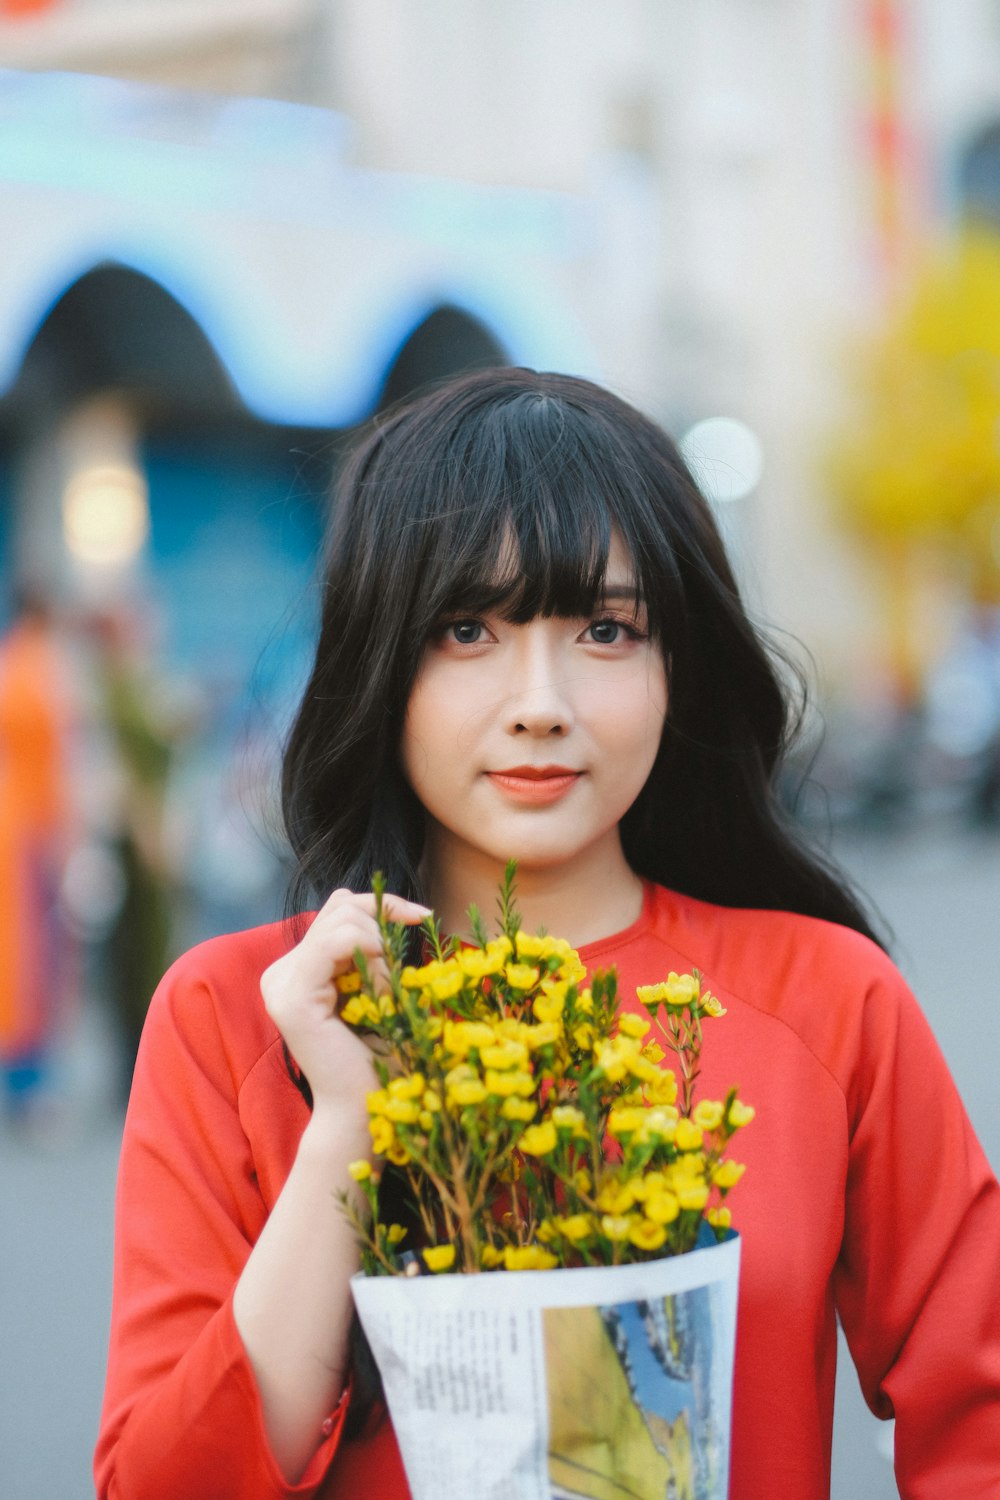 Eine Frau hält einen Strauß gelber Blumen